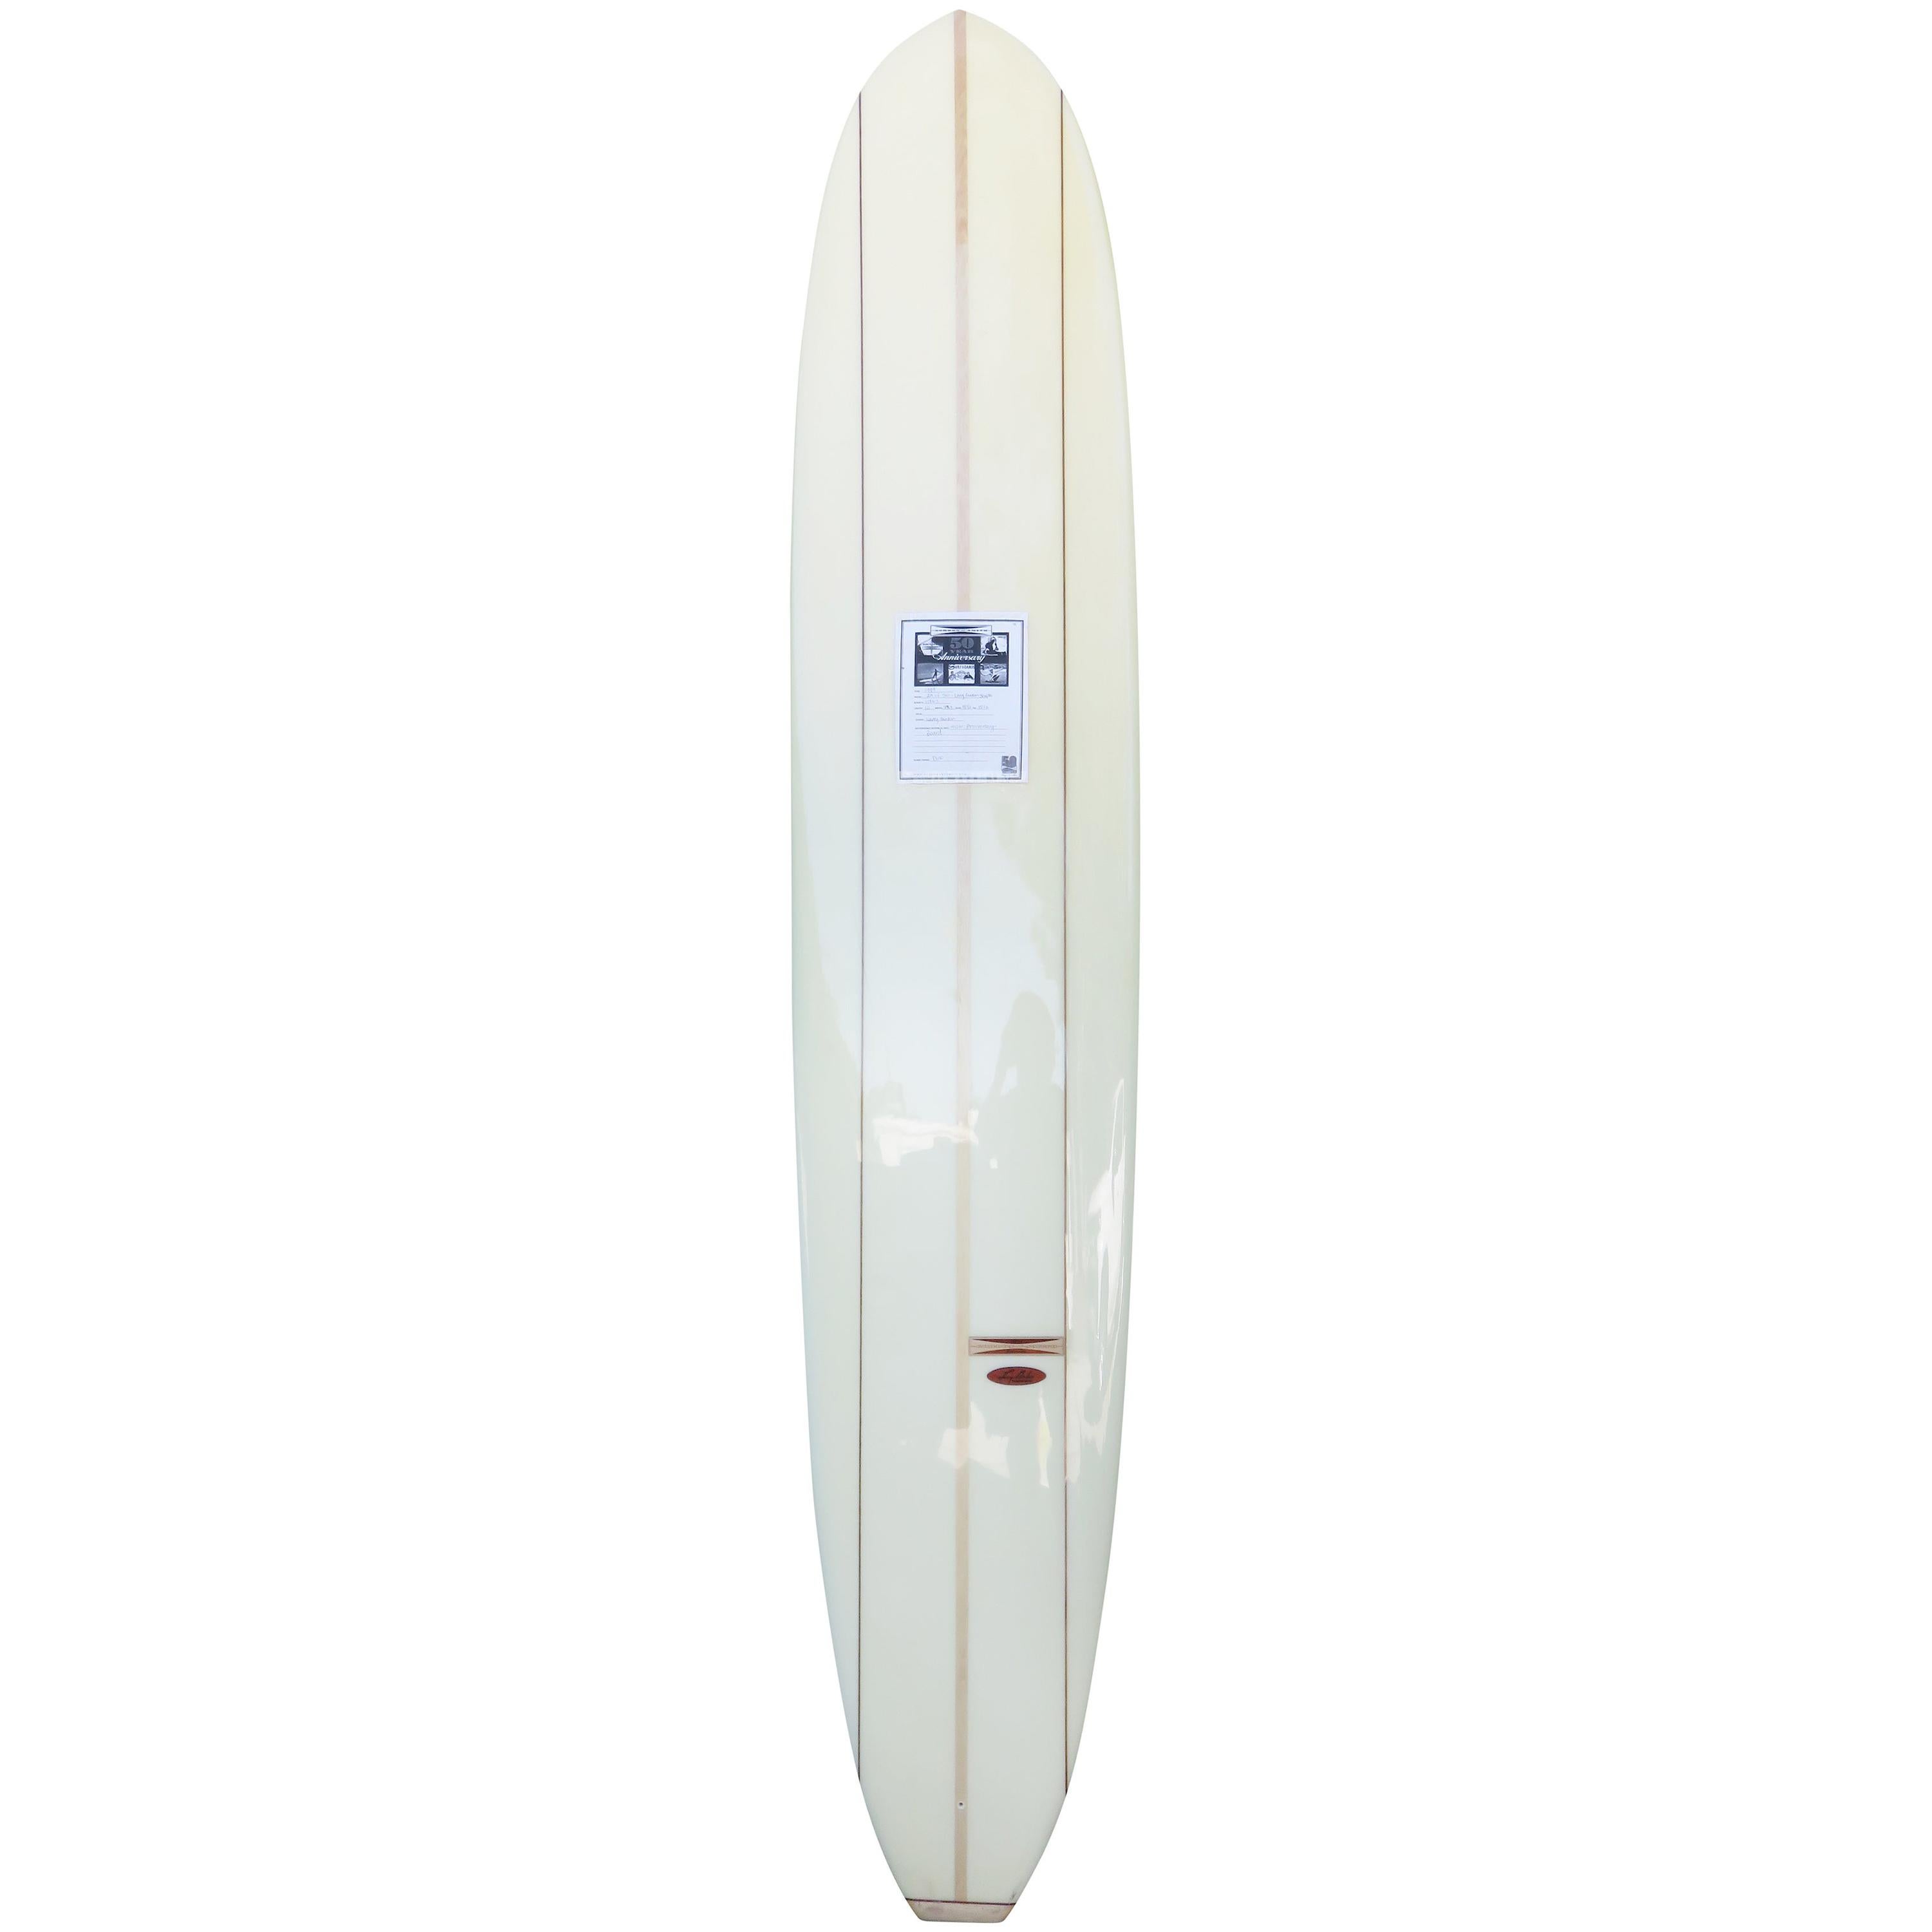 Gordon & Smith Larry Gordon Model Longboard Surfboard #29/50